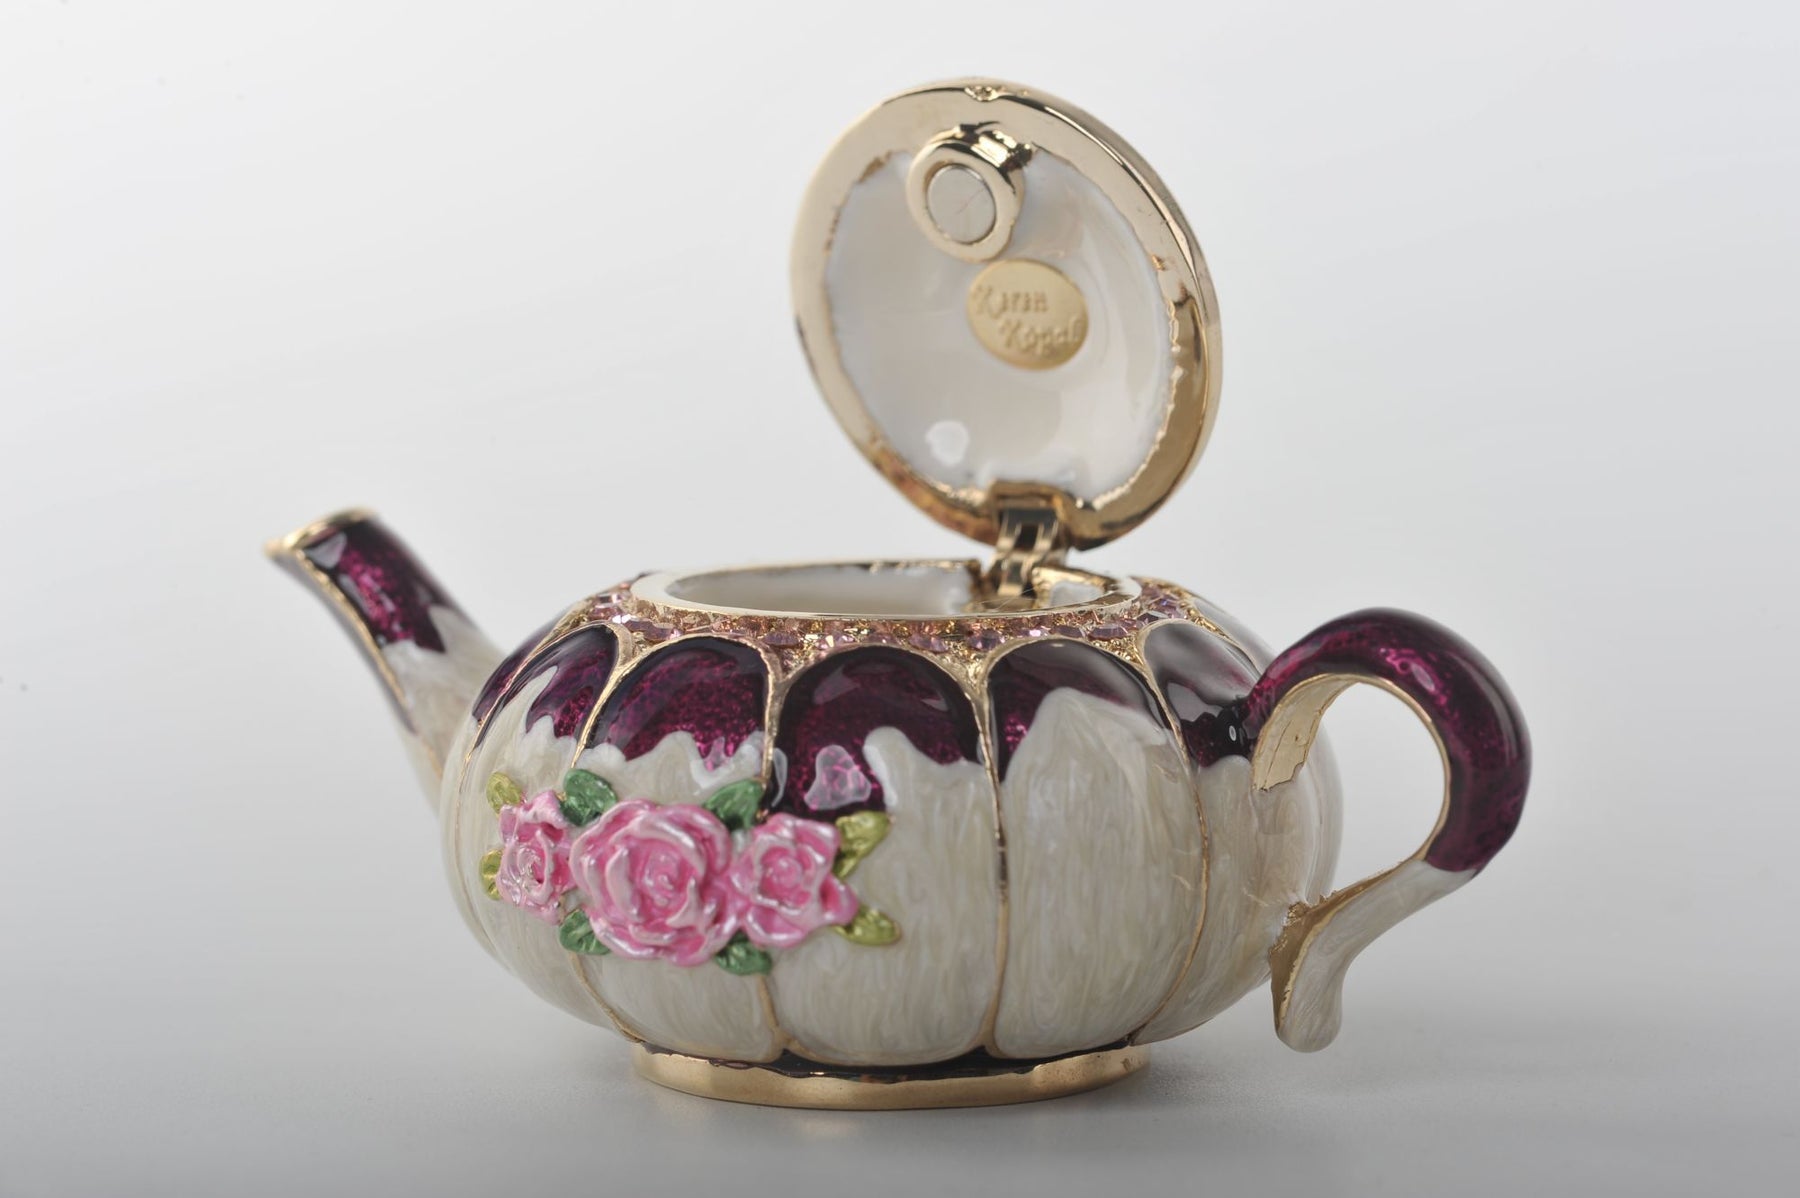 Keren Kopal White Teapot with Pink Roses  53.50